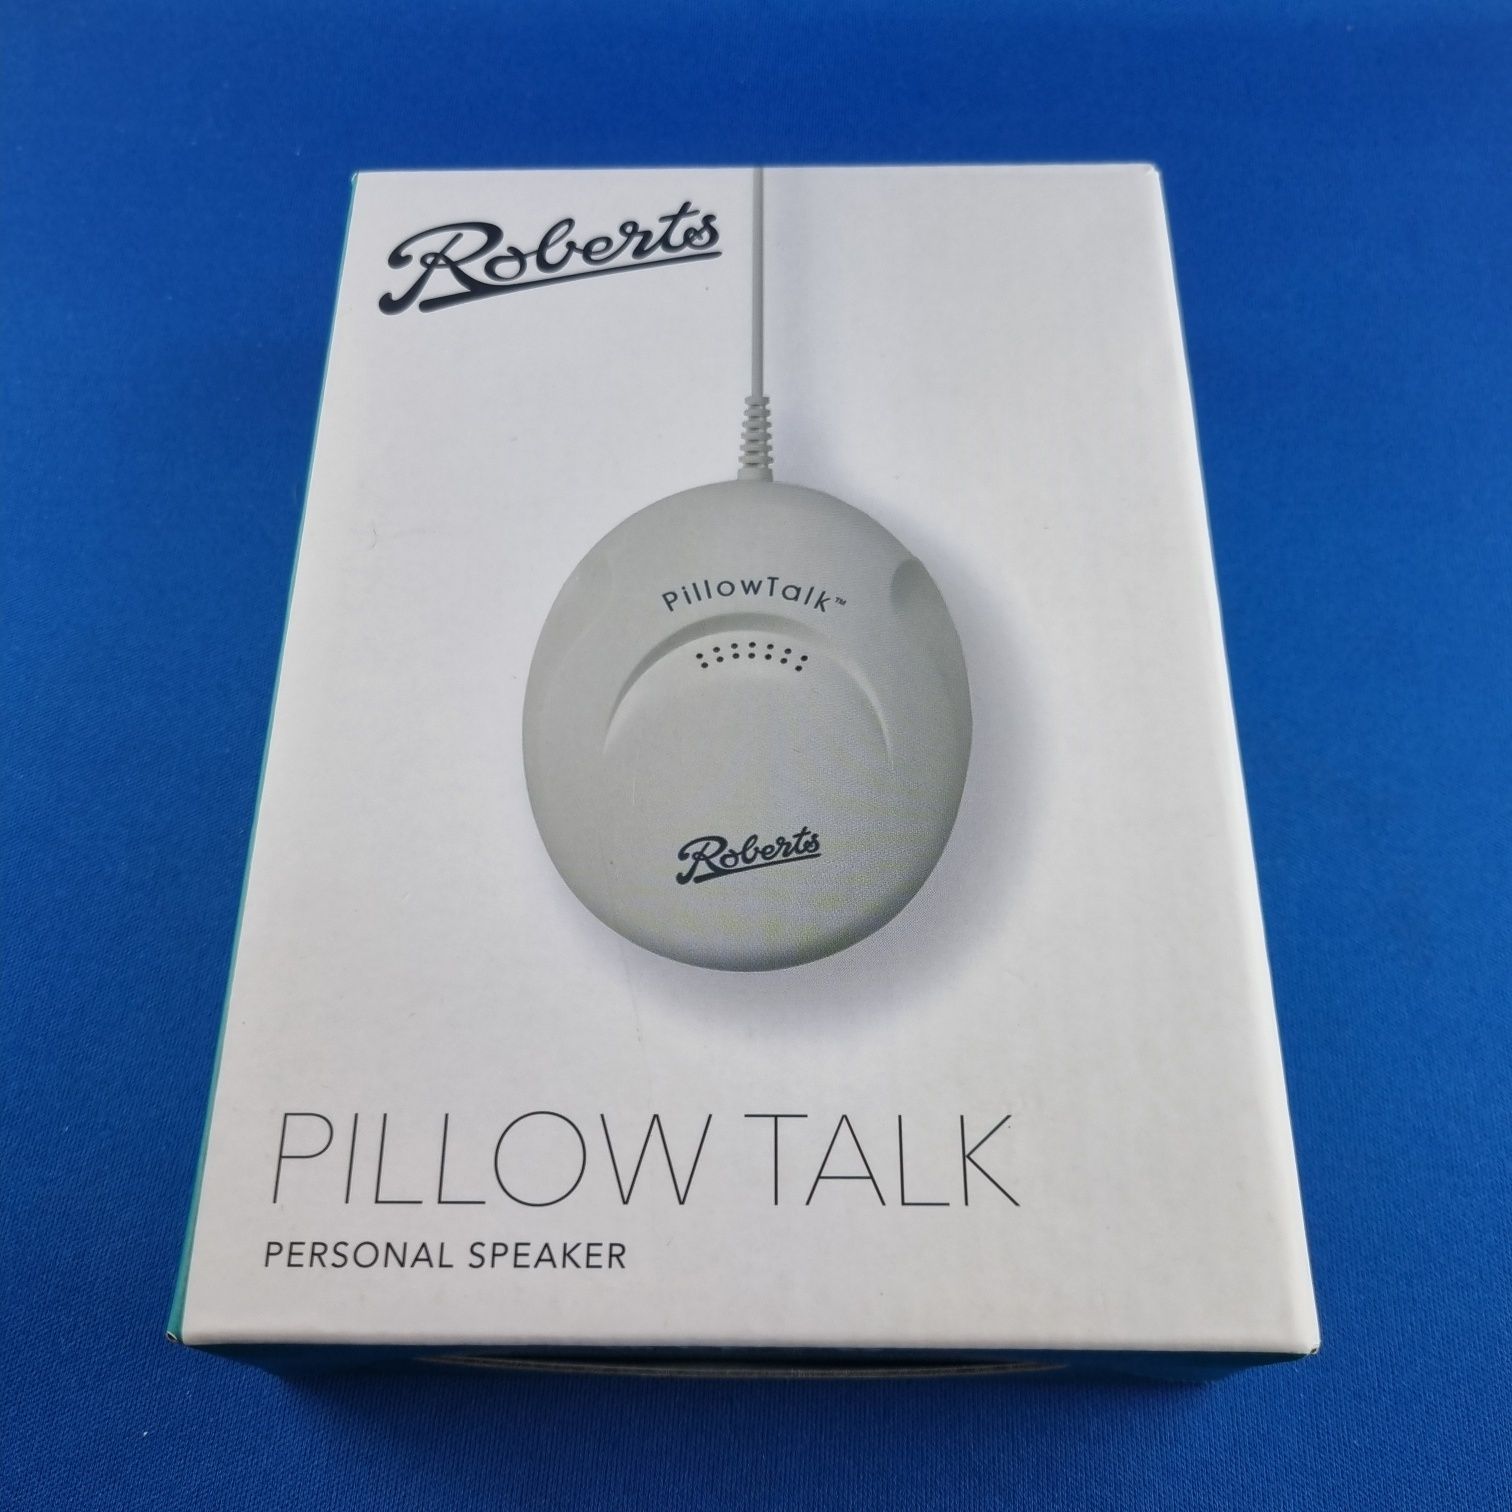 Pillow Talk Personal Speaker idealny sposob na sluchanie muzyki w nocy